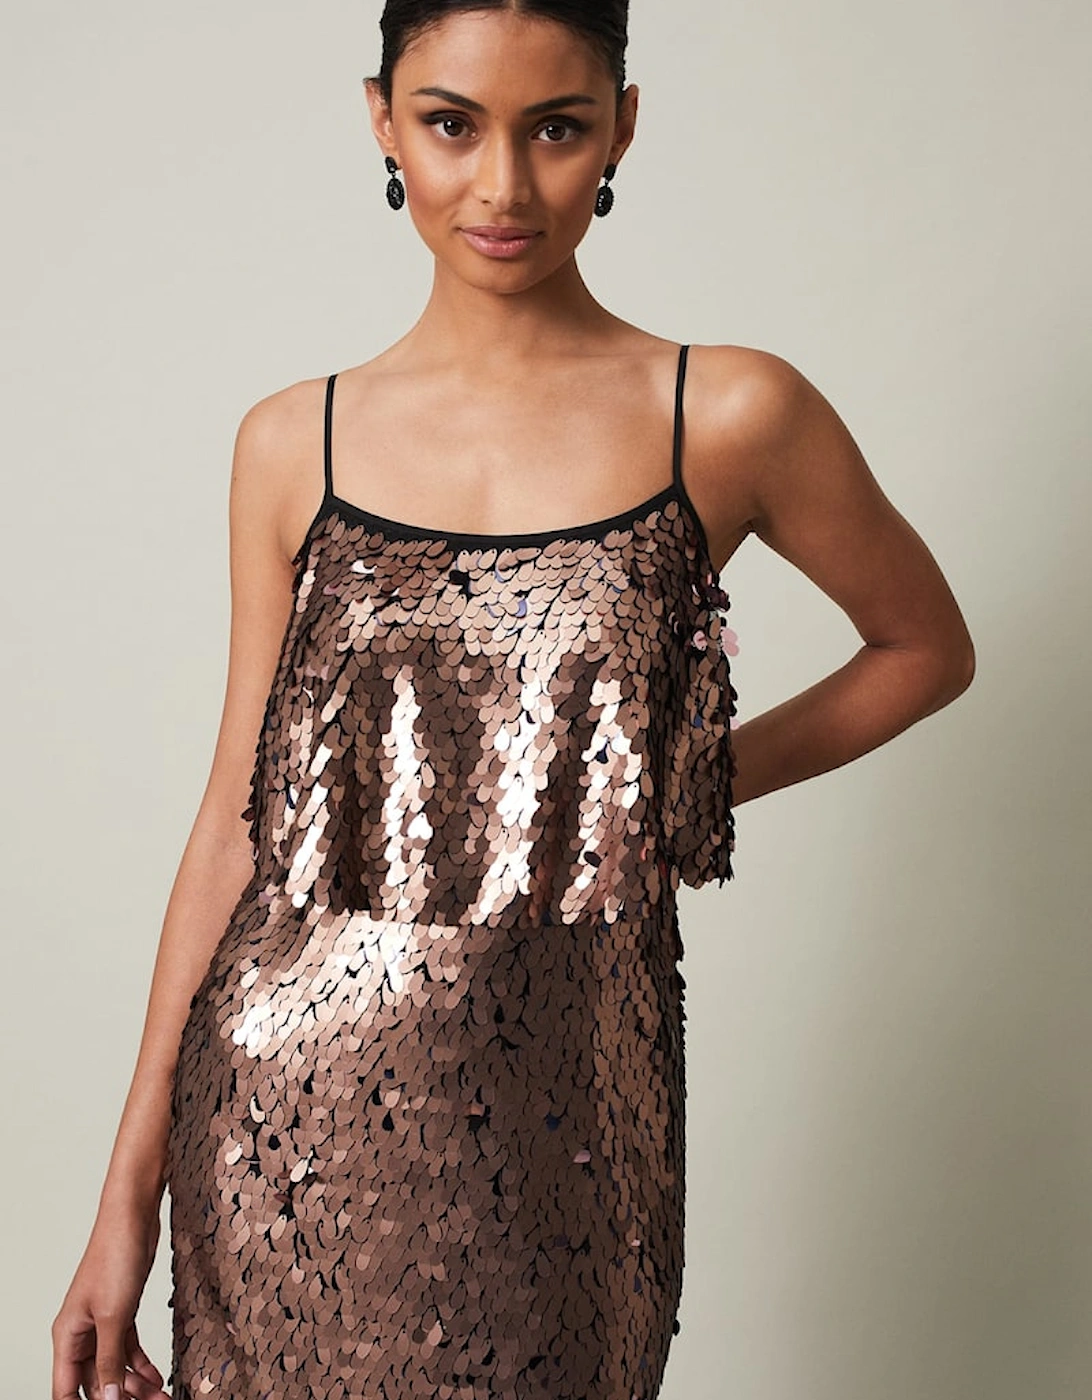 Myka Bronze Sequin Tiered Dress